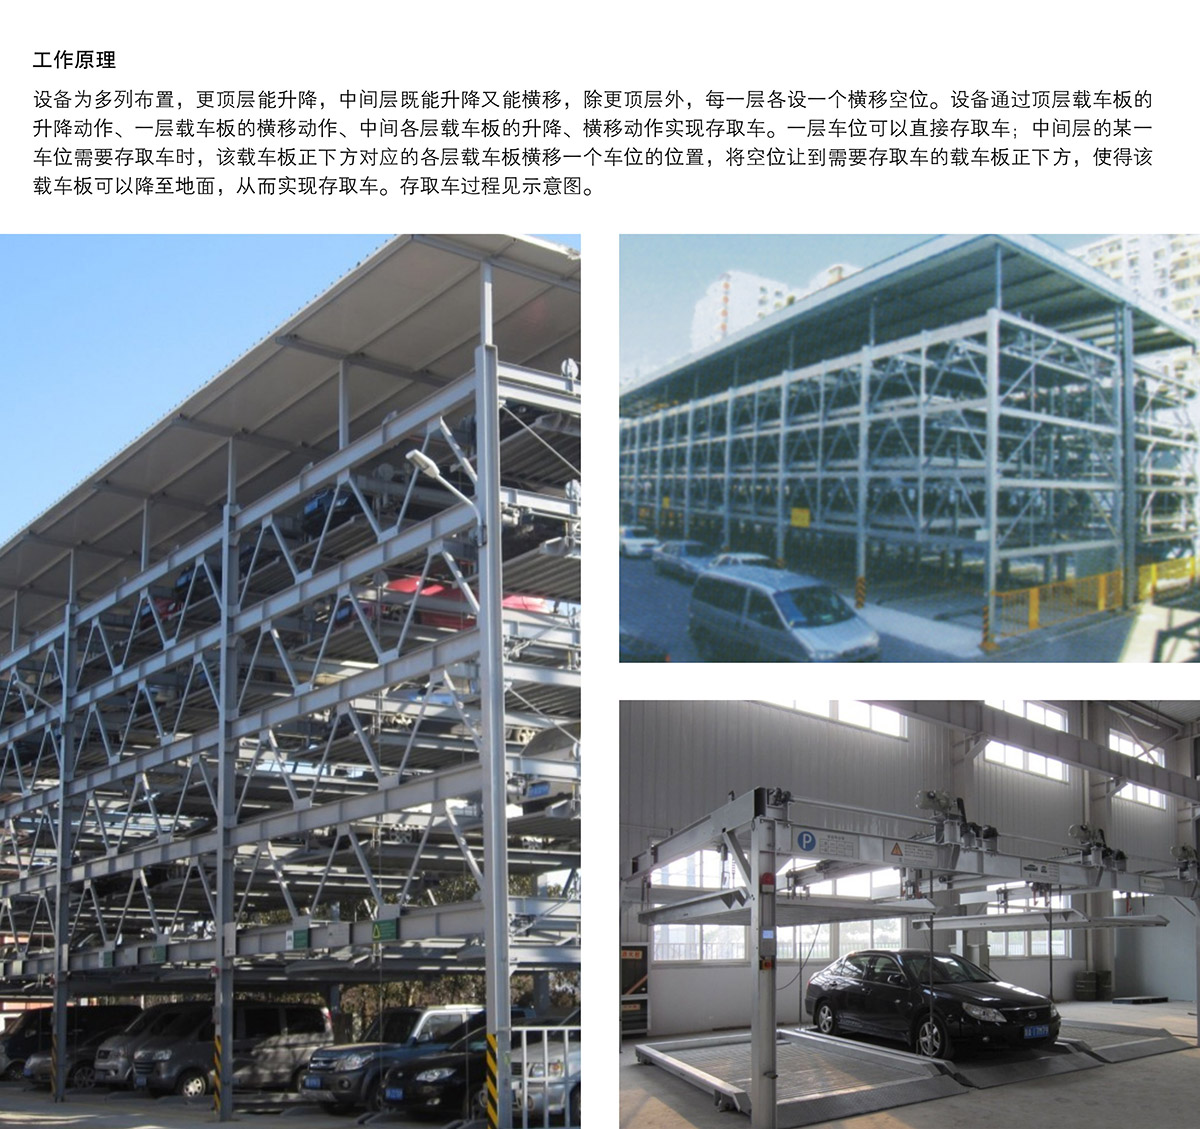 机械车库四至六层PSH4-6升降横移机械停车设备工作原理.jpg